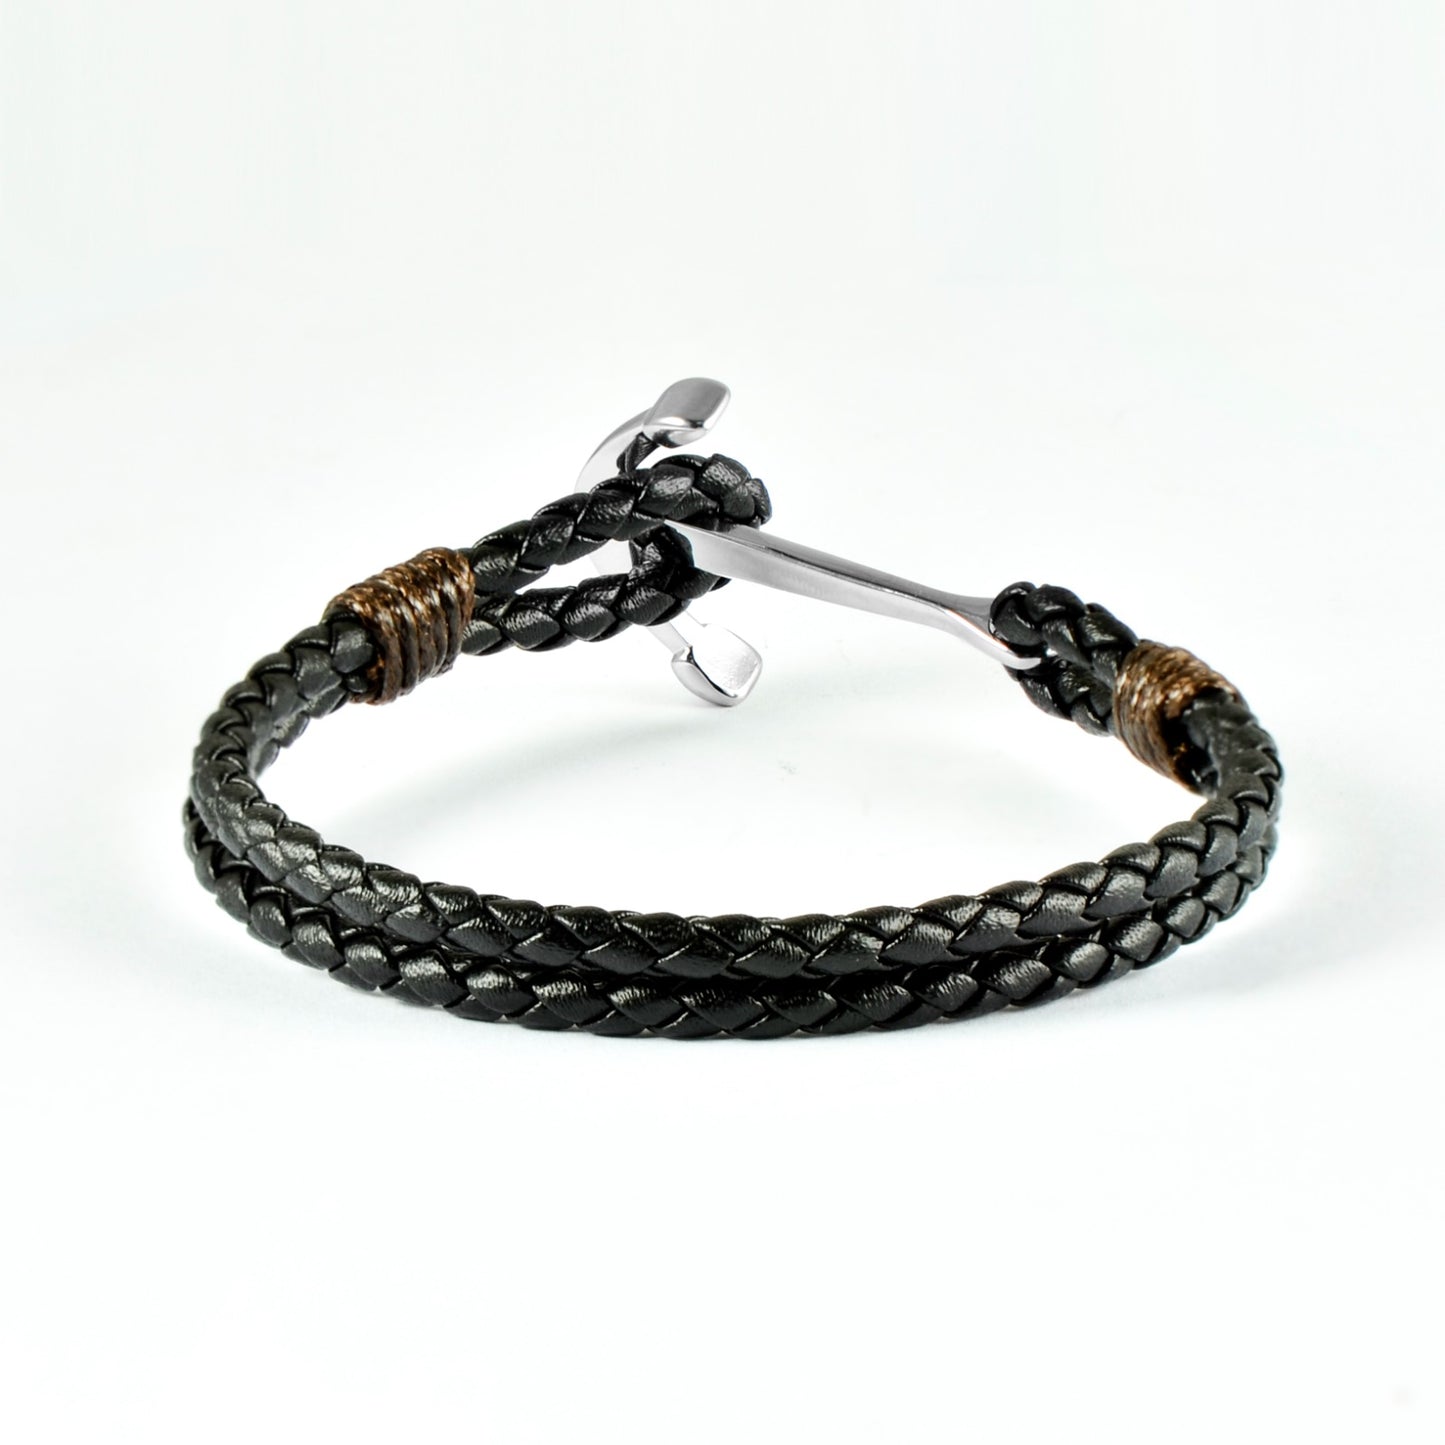 Mens Trendy Full Anchor Style Leather Bracelet